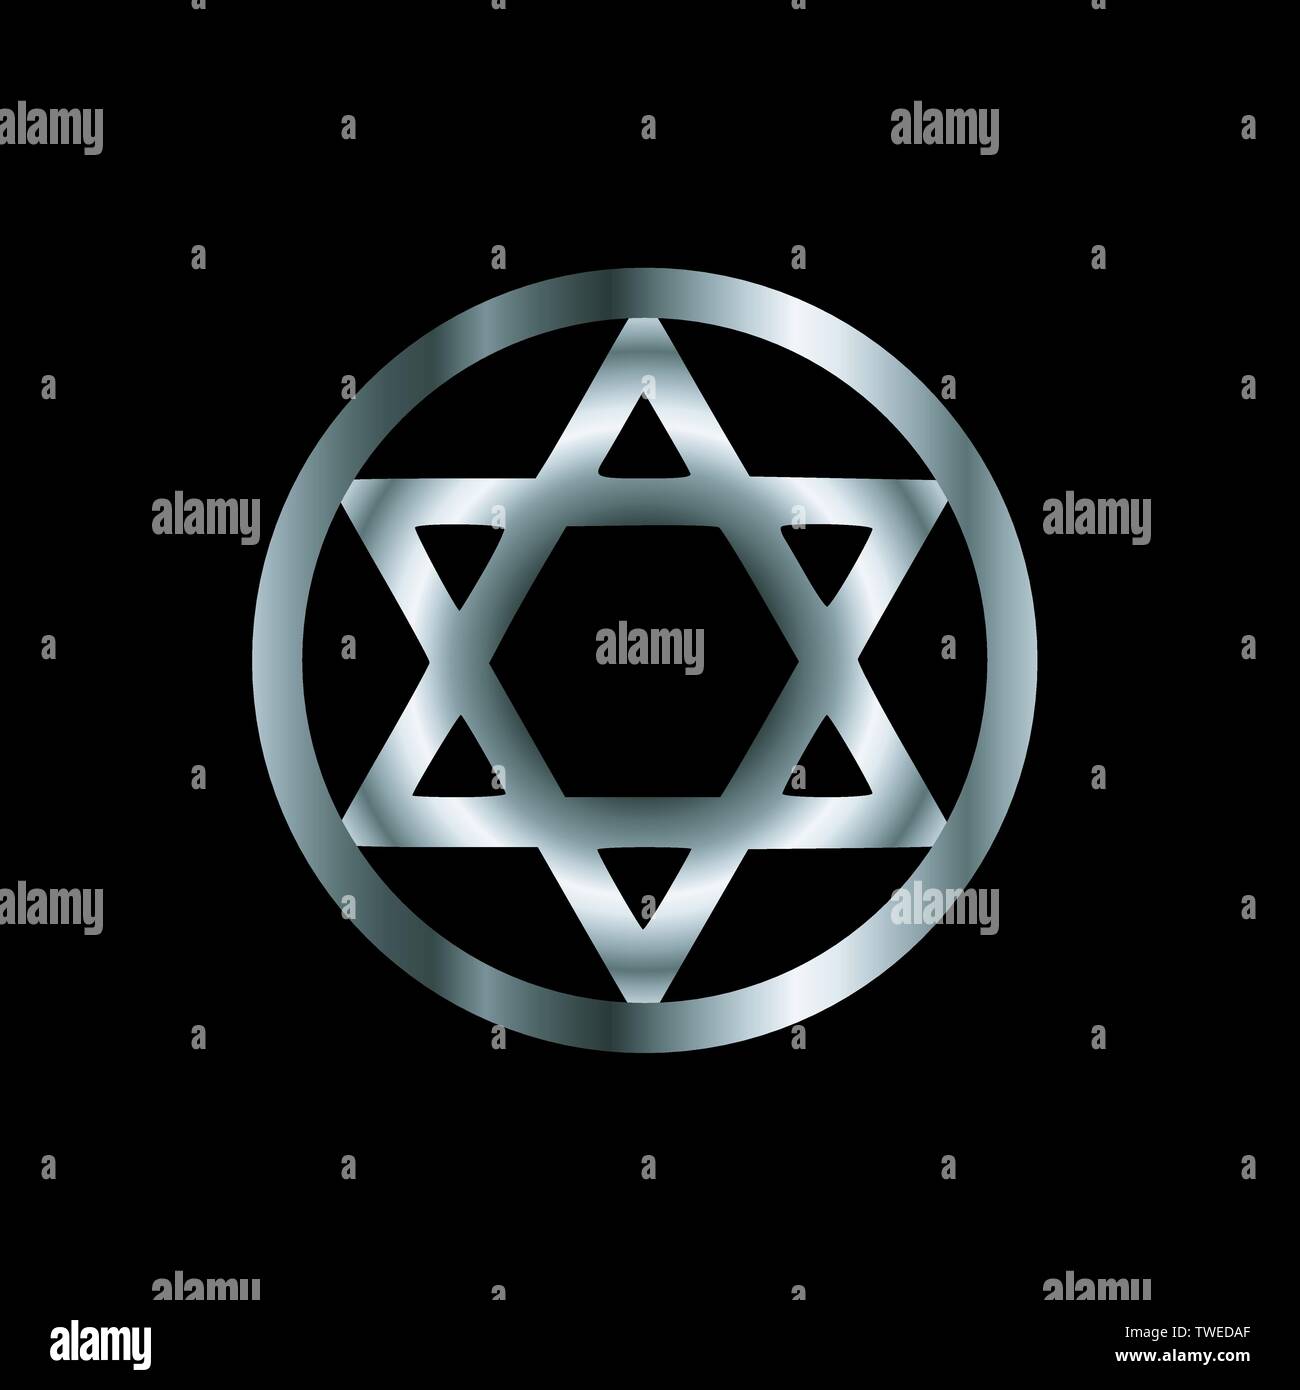 Estrella de seis puntas salomón fotografías e imágenes de alta resolución -  Alamy